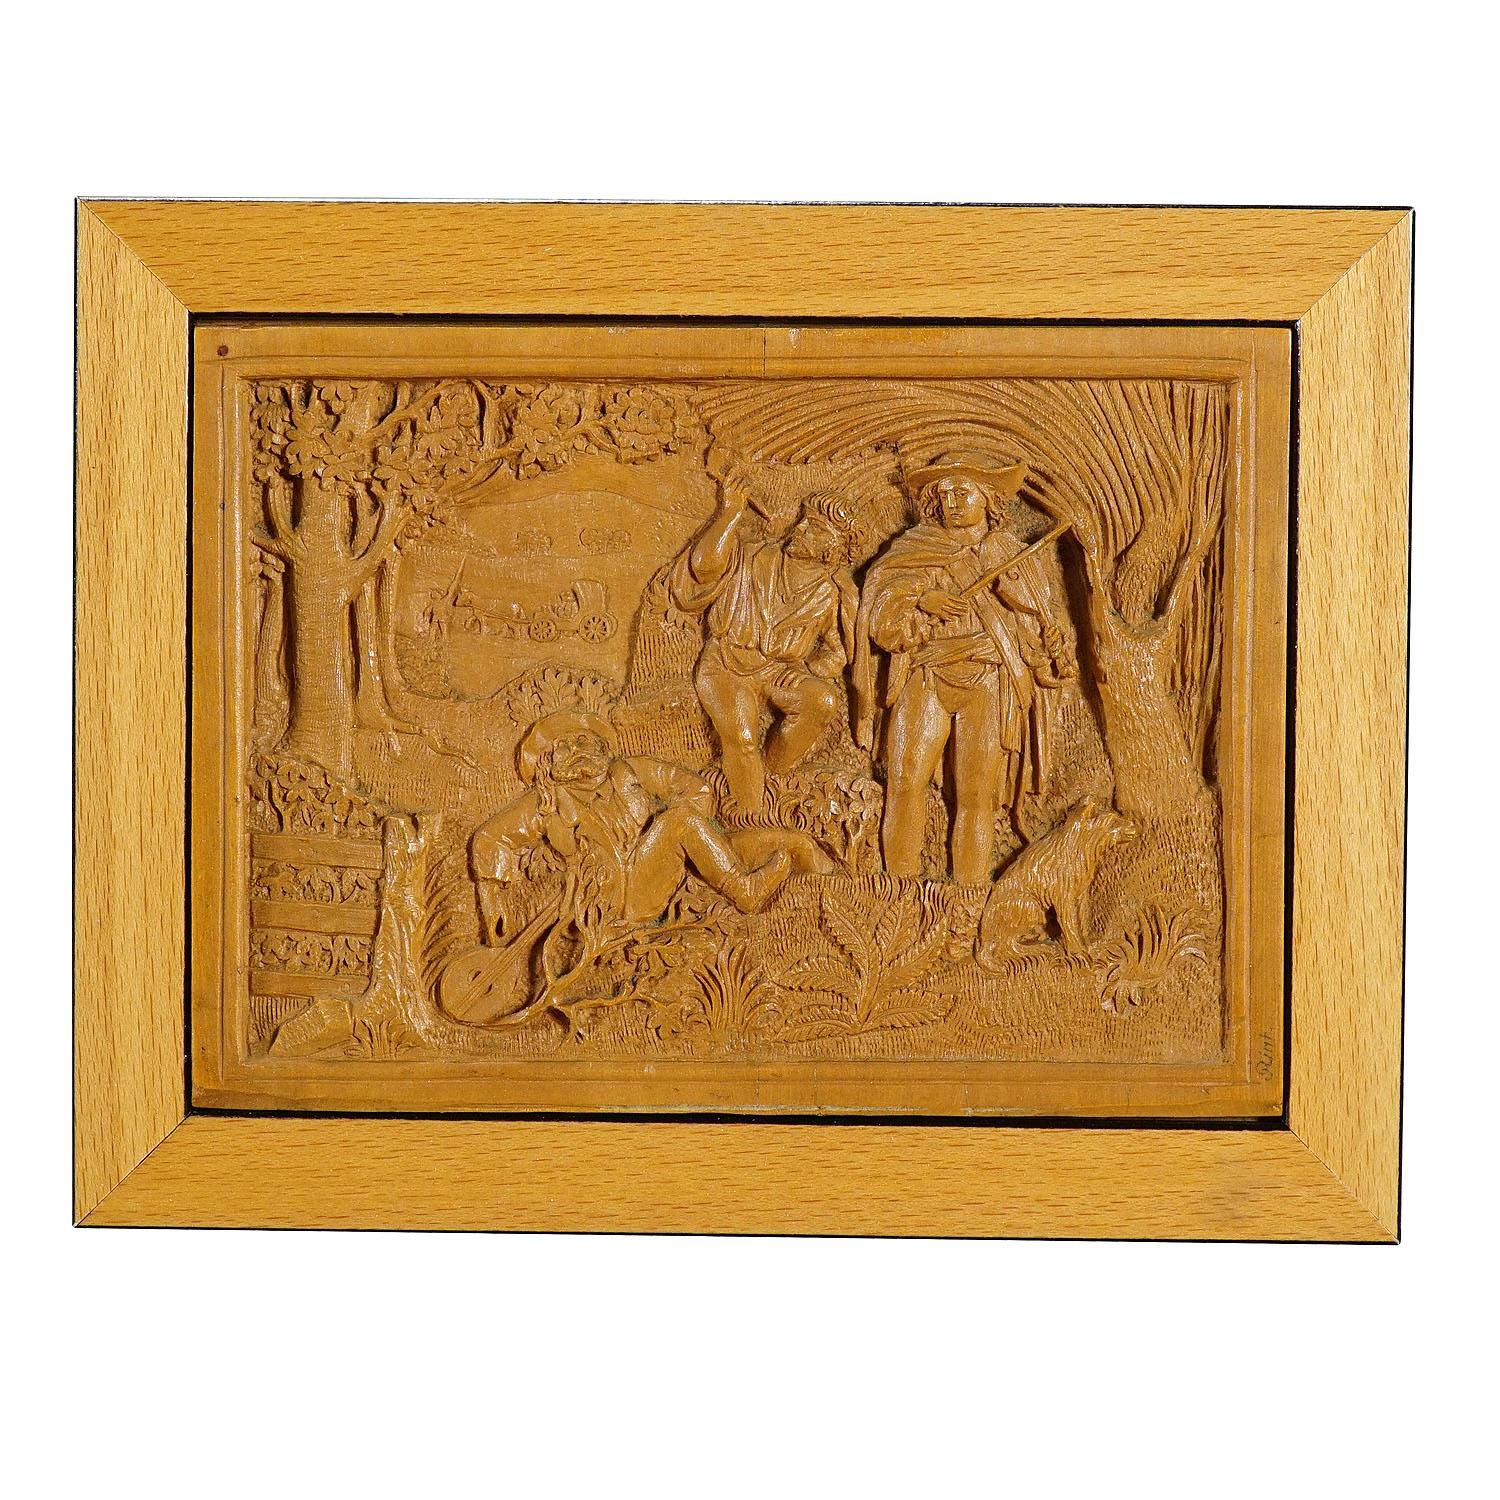 Holz-Mini-Schnitzplakette aus Holz von Johann Rint, um 1880

Eine kleine Wandtafel mit detaillierten Reliefschnitzereien aus Lindenholz von Johann Rint ca. 1880. Wahrscheinlich handelt es sich um eine Szene nach Erzählungen von Joseph Victor von